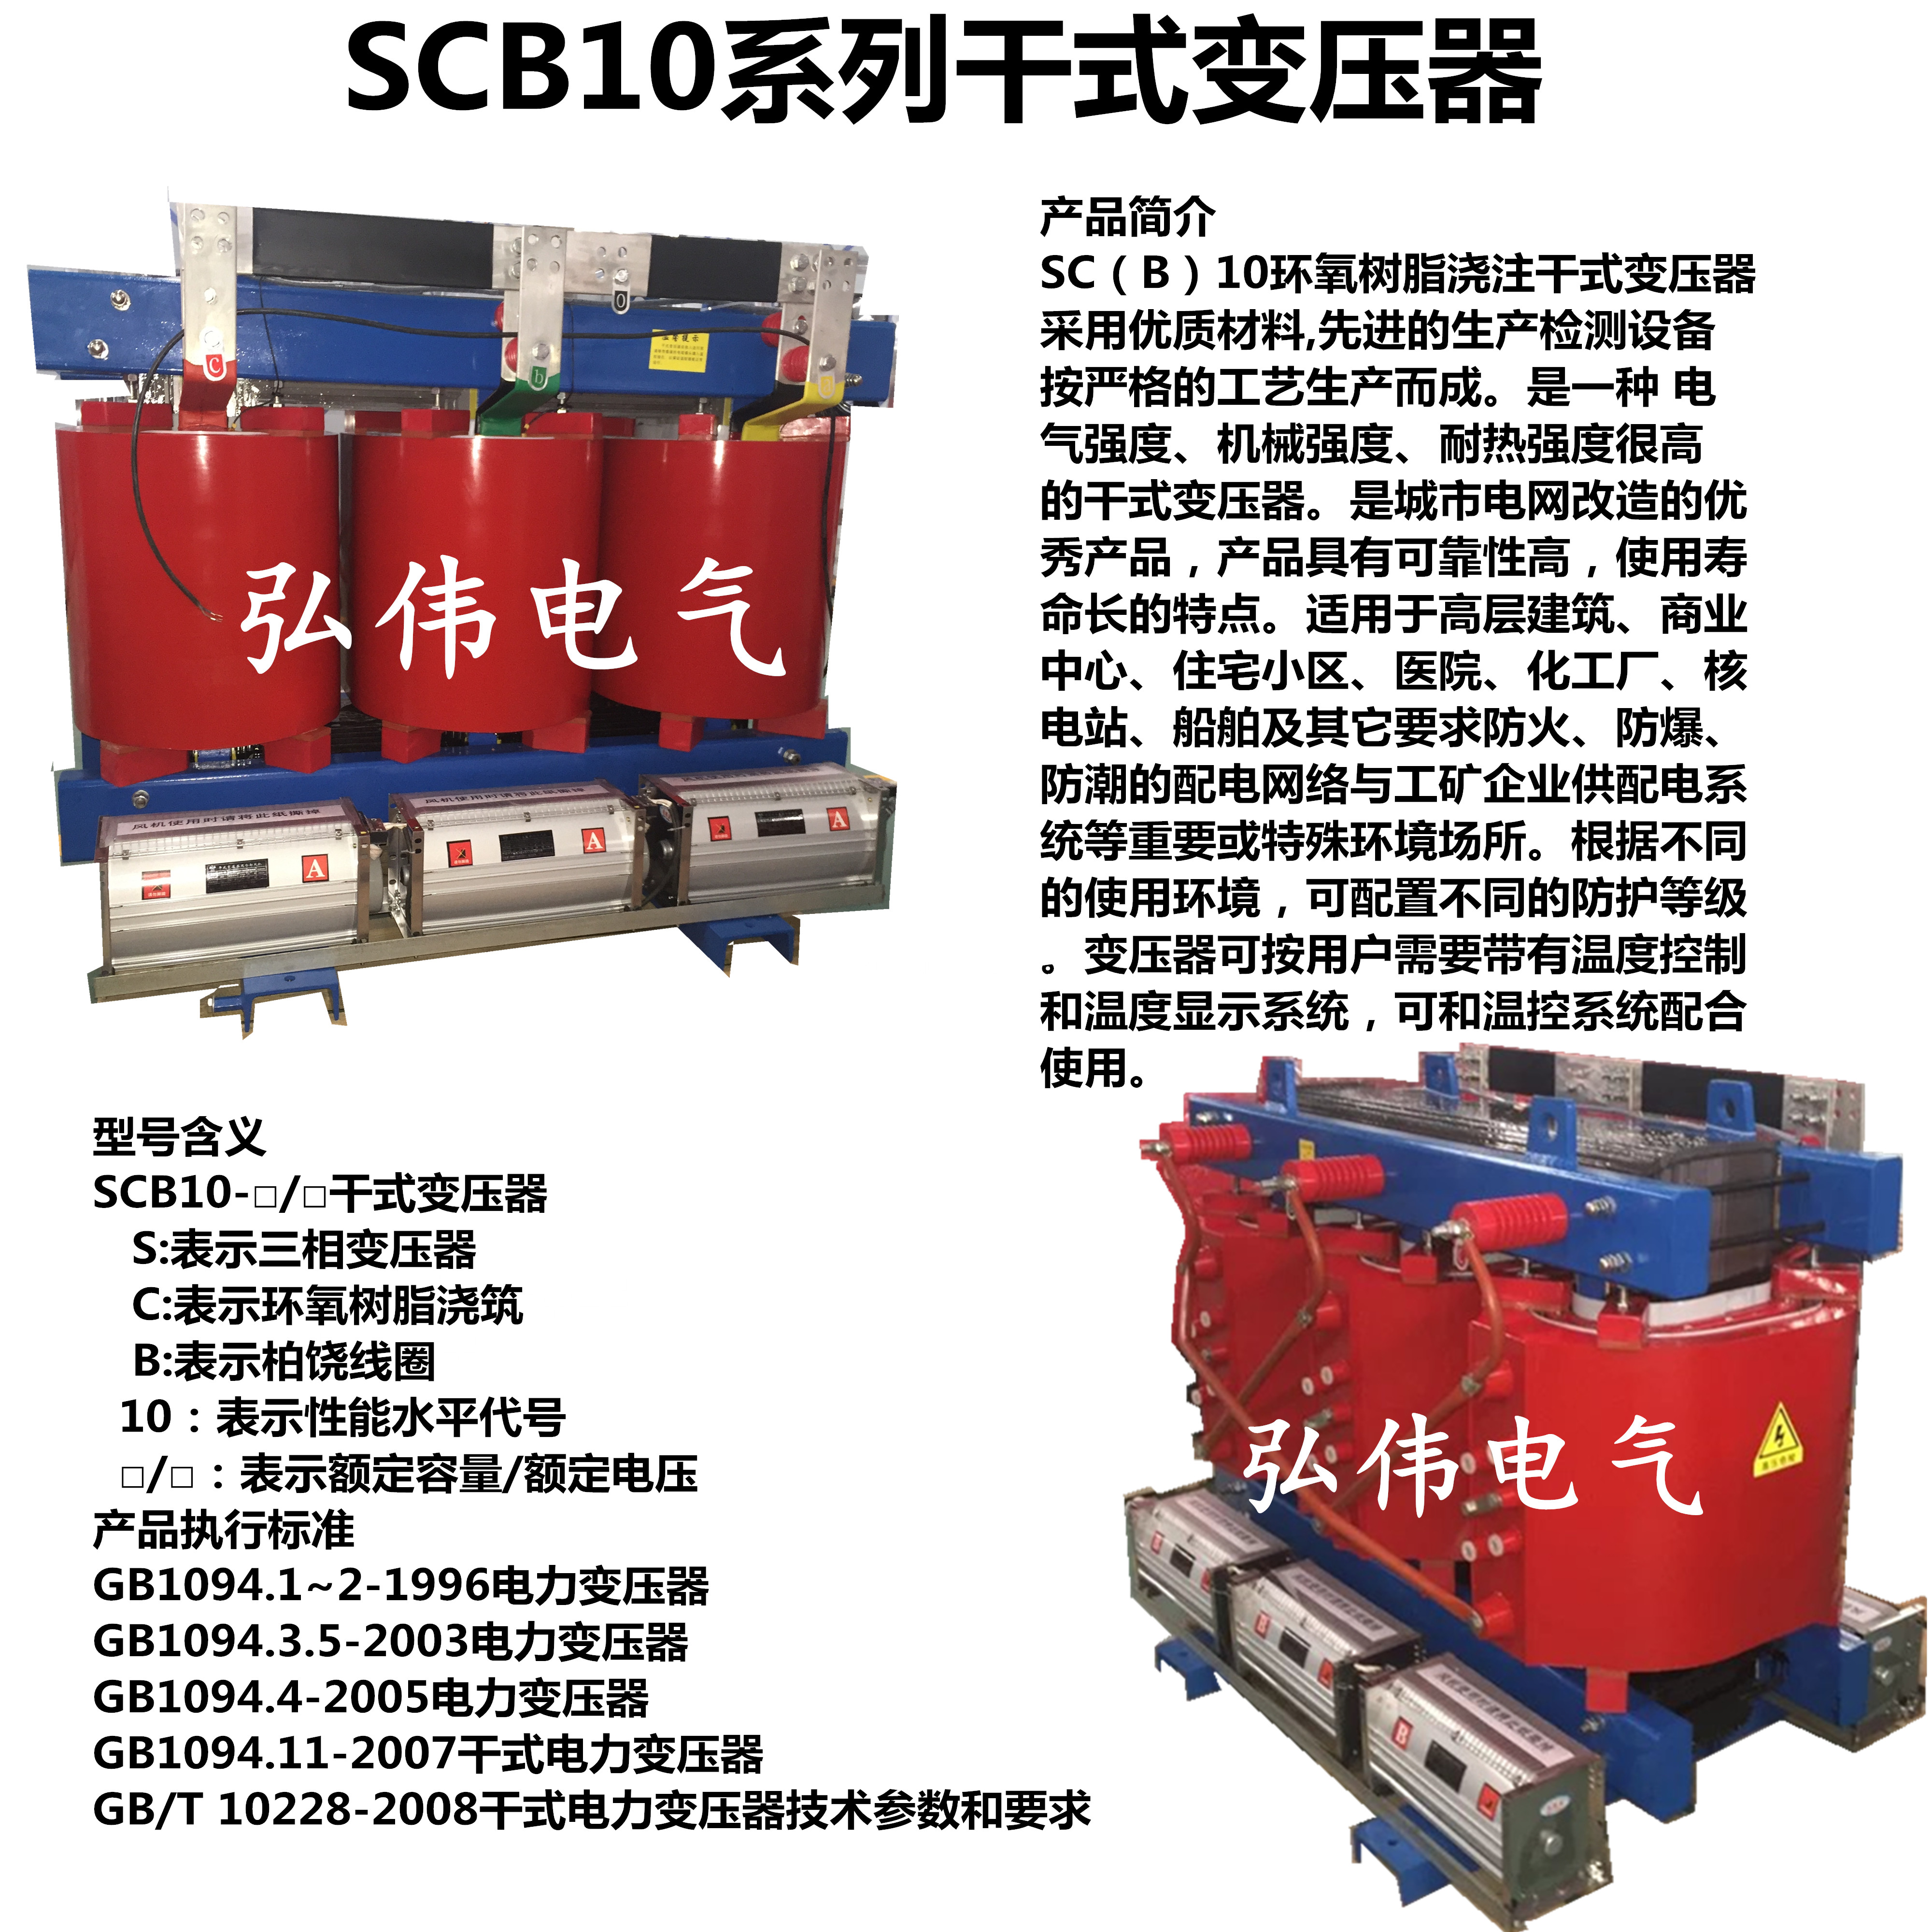 干式变电力压器 SCB10-200KVA,干式变电力压器,干式变压器,200KVA干式变压器,SCB10干式变压器